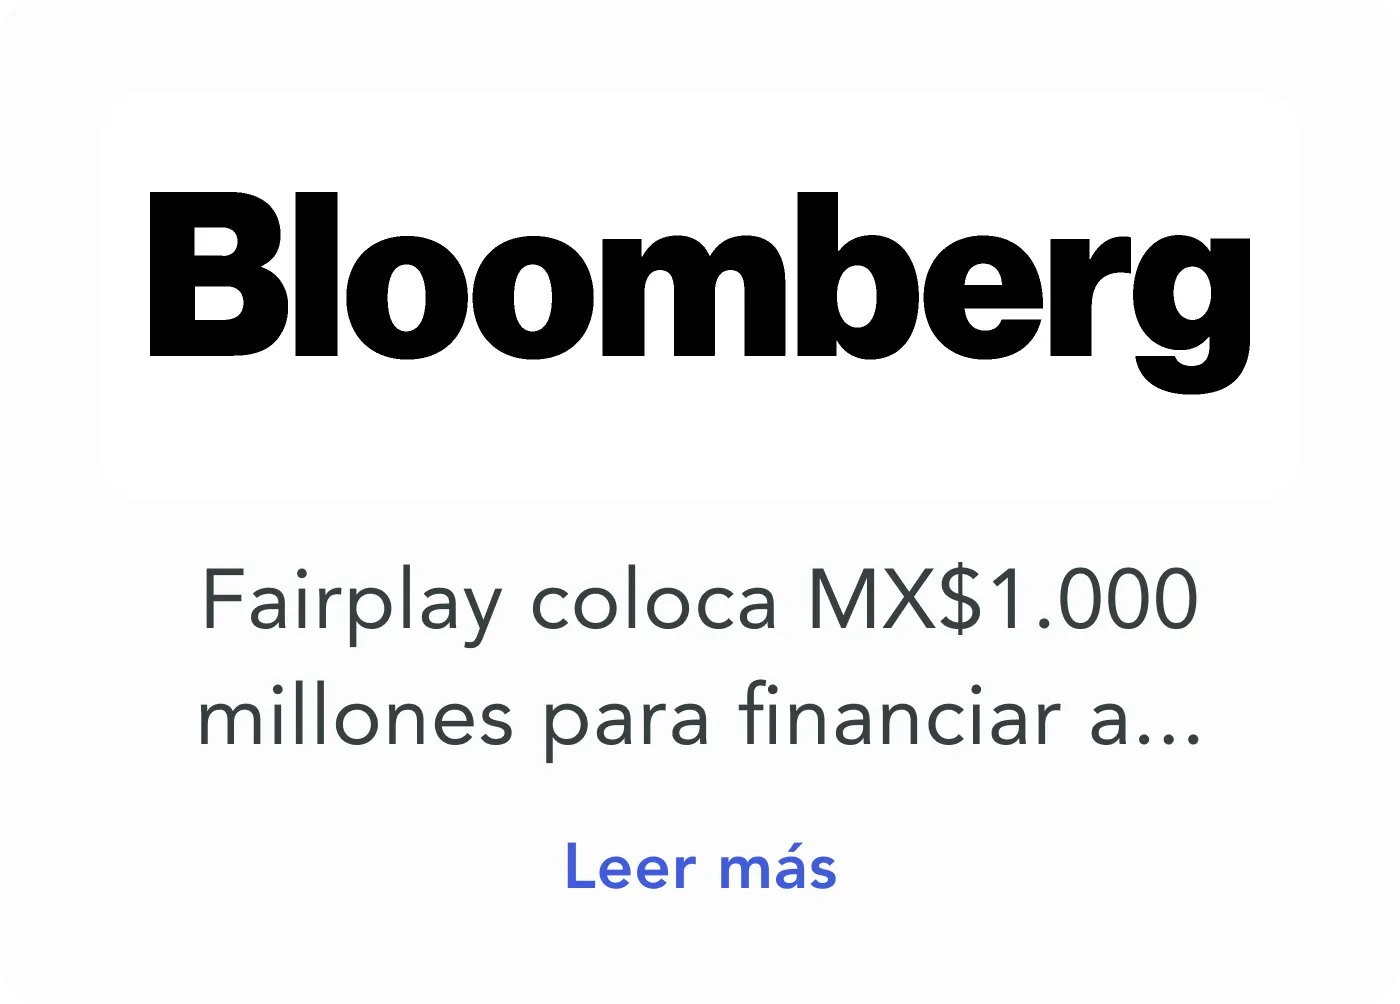 Fairplay en Bloomberg